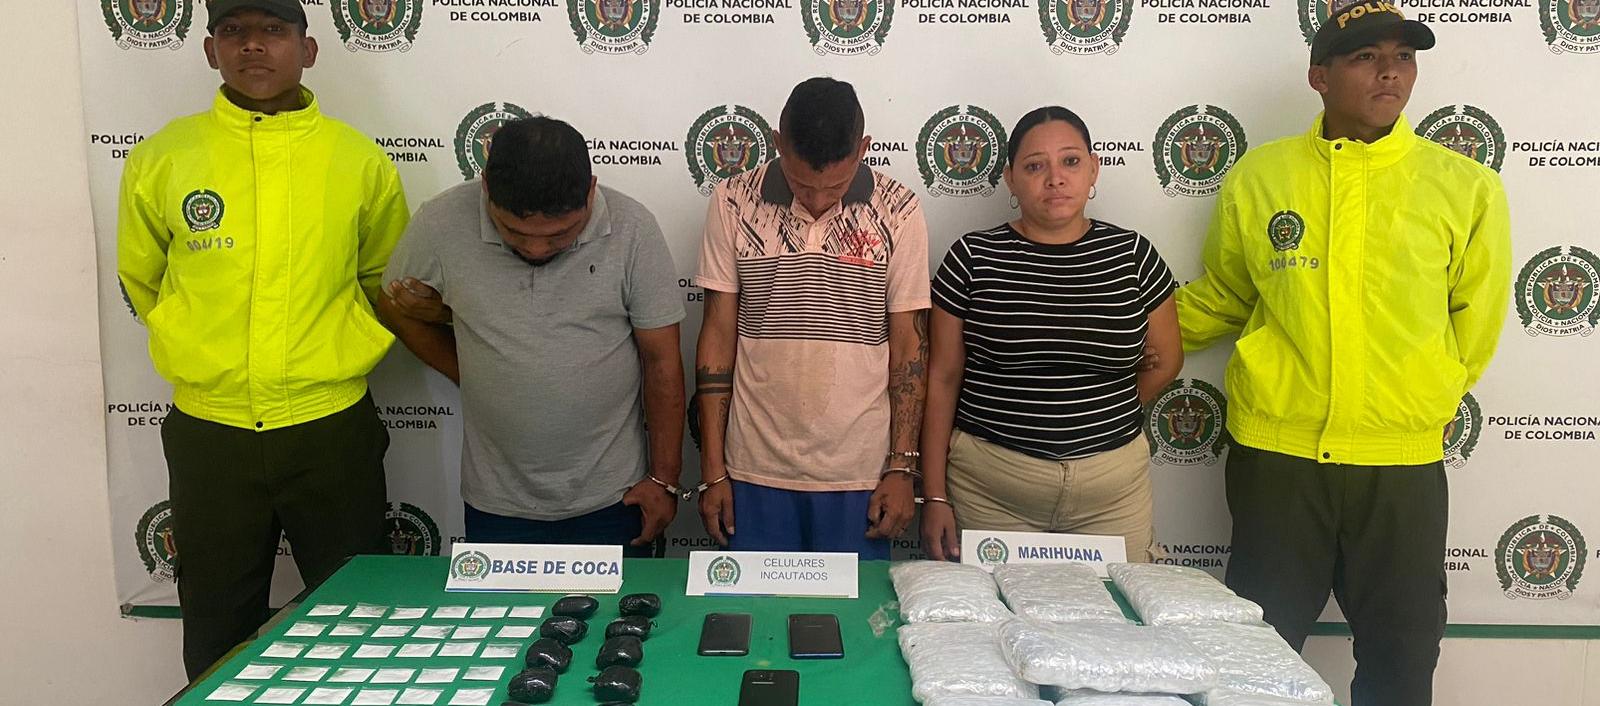 Les encontraron panelas de marihuana, 203 gramos base de coca, 106 gramos cocaína.